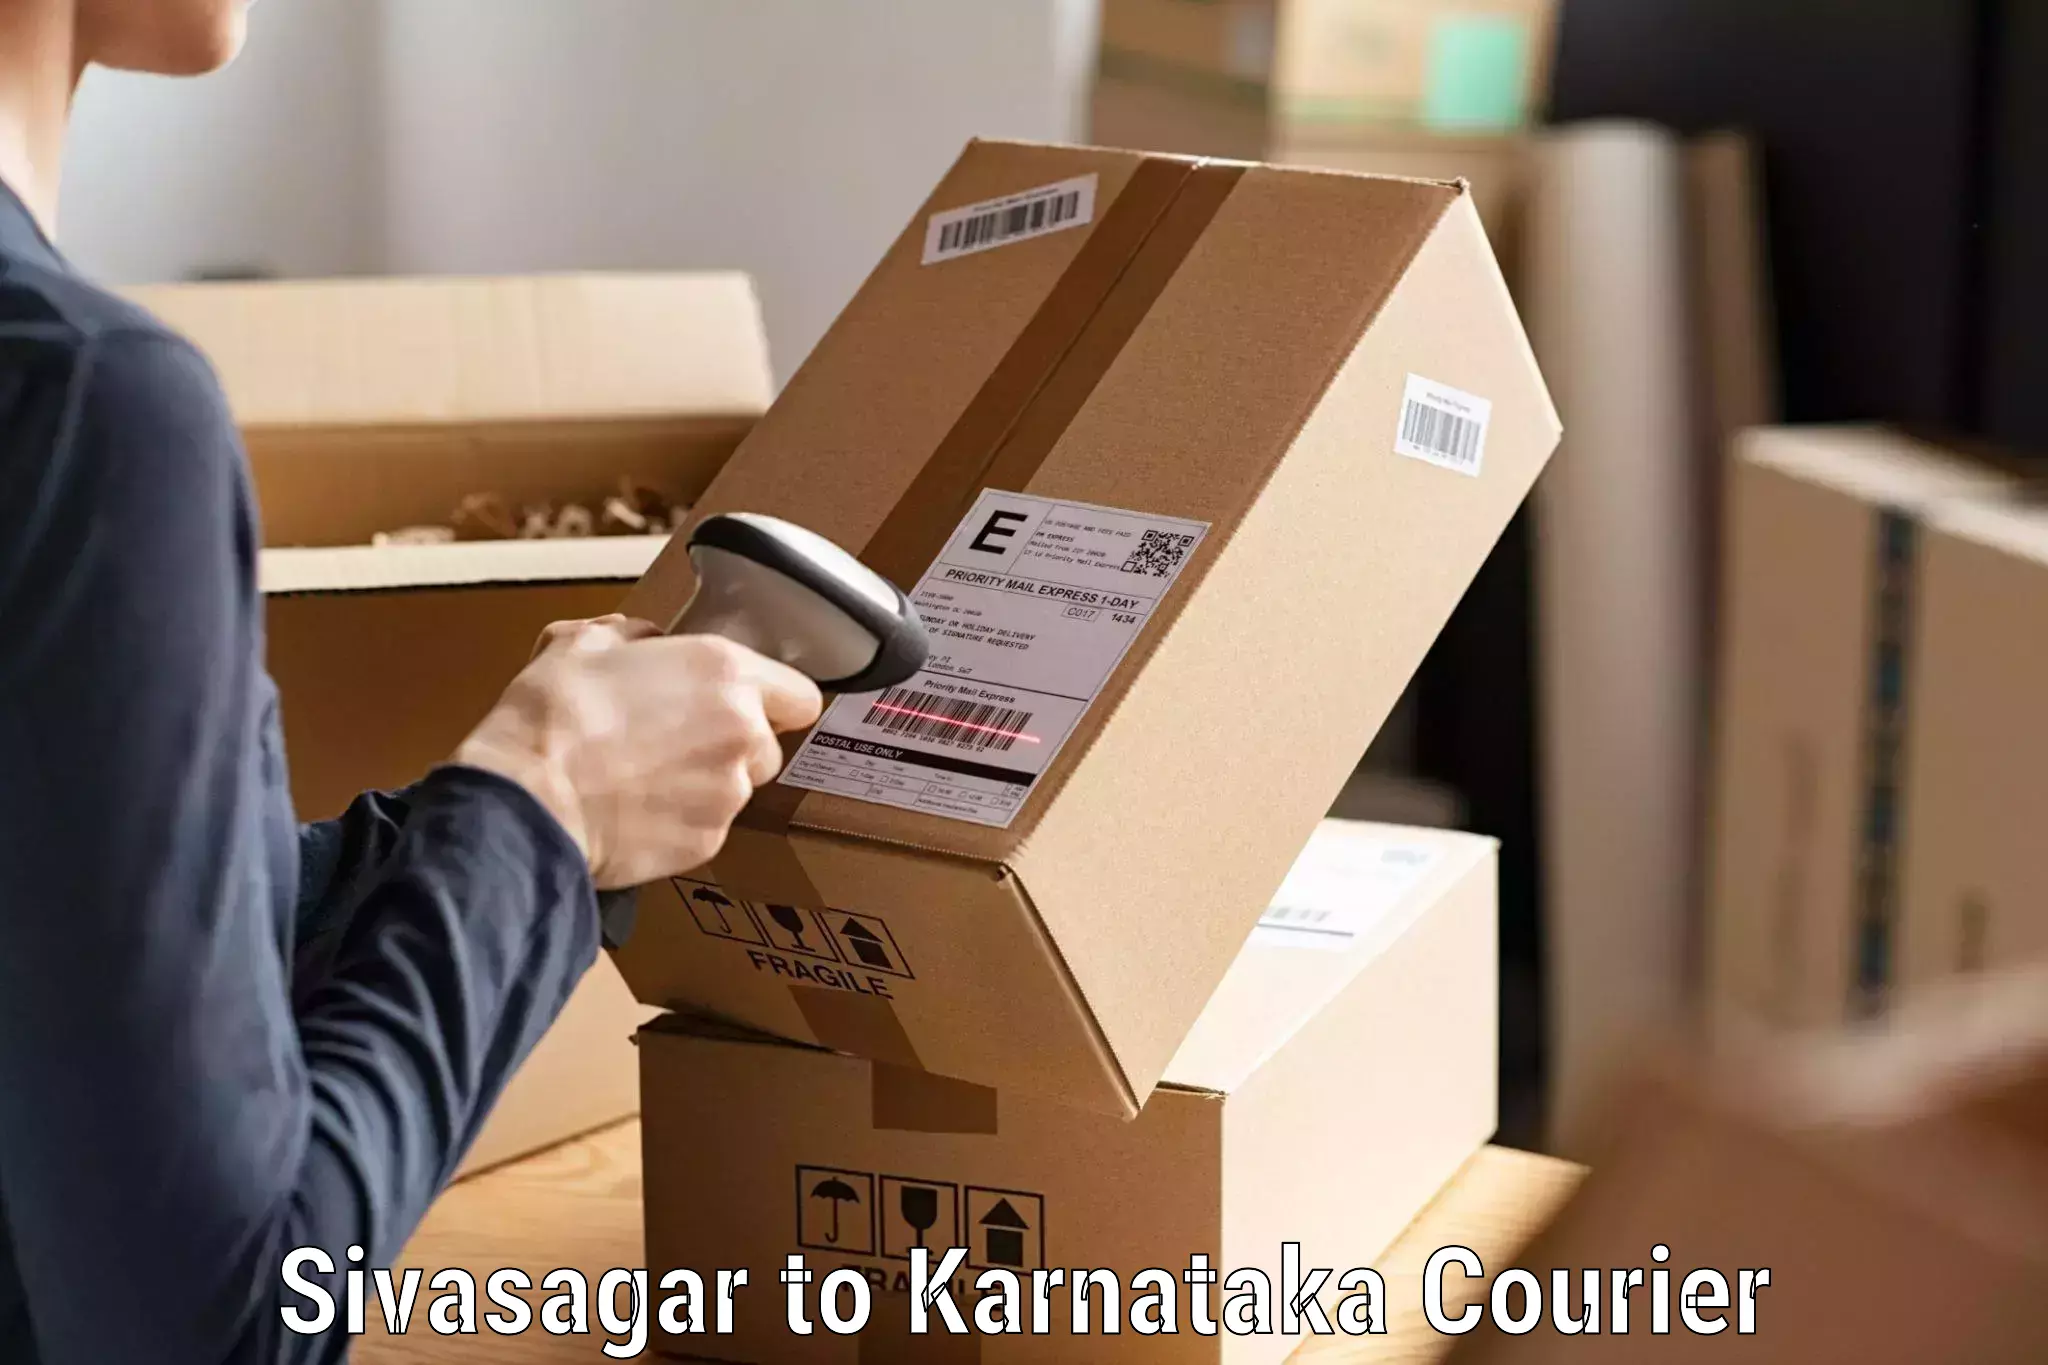 Global parcel delivery Sivasagar to Shorapur